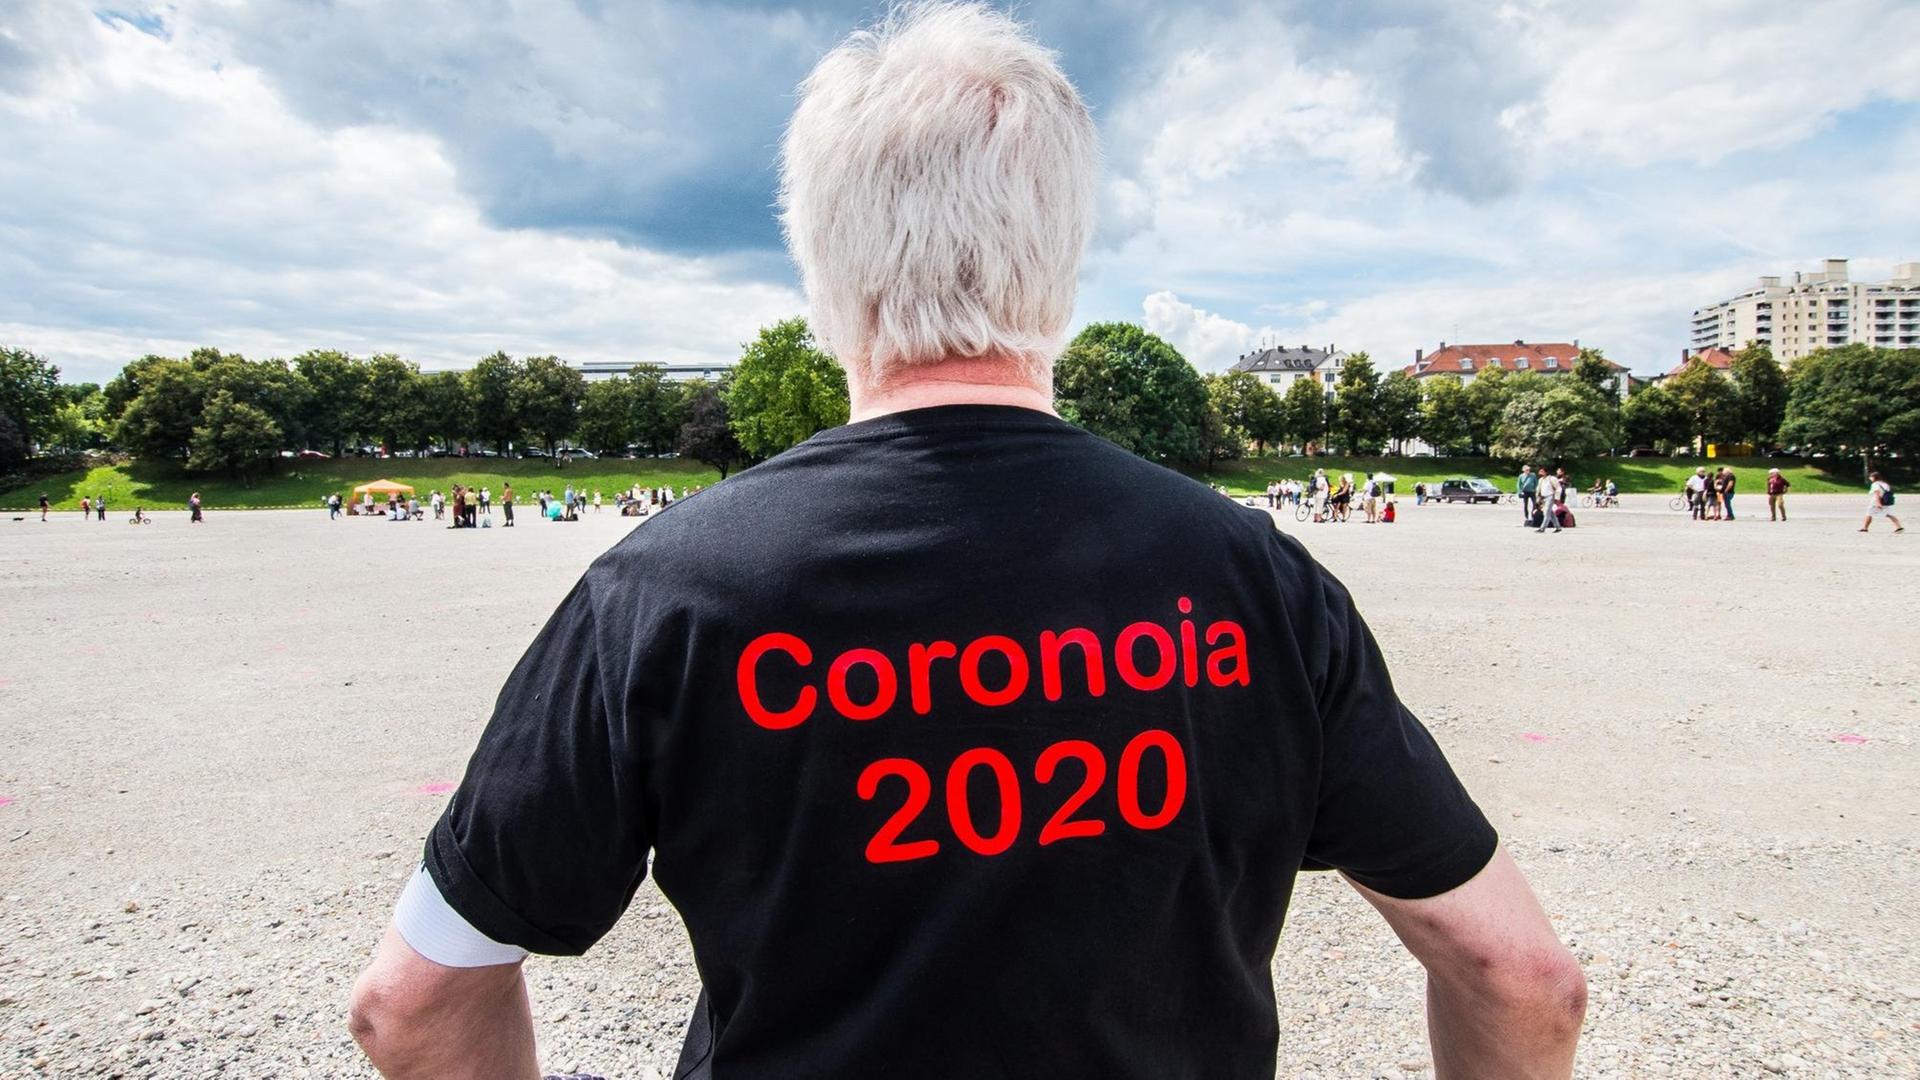 Man sieht einen Mann von hinten, der ein schwarzes T-Shirt mit dem roten Aufdruck "Coronoia 2020" trägt